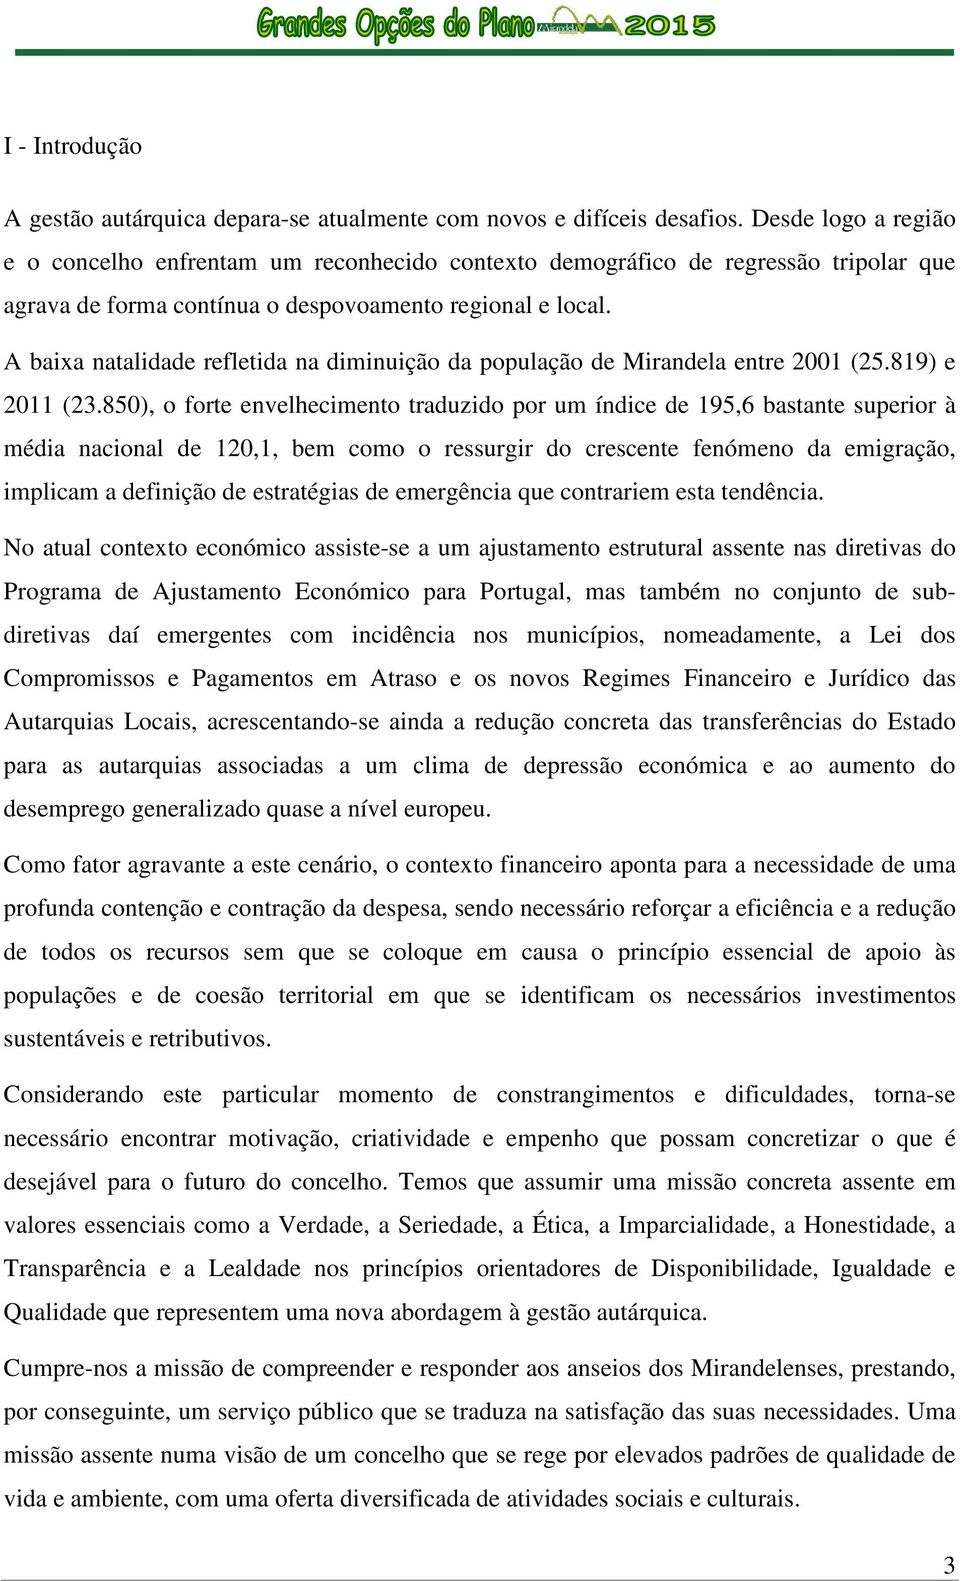 A baixa natalidade refletida na diminuição da população de Mirandela entre 2001 (25.819) e 2011 (23.